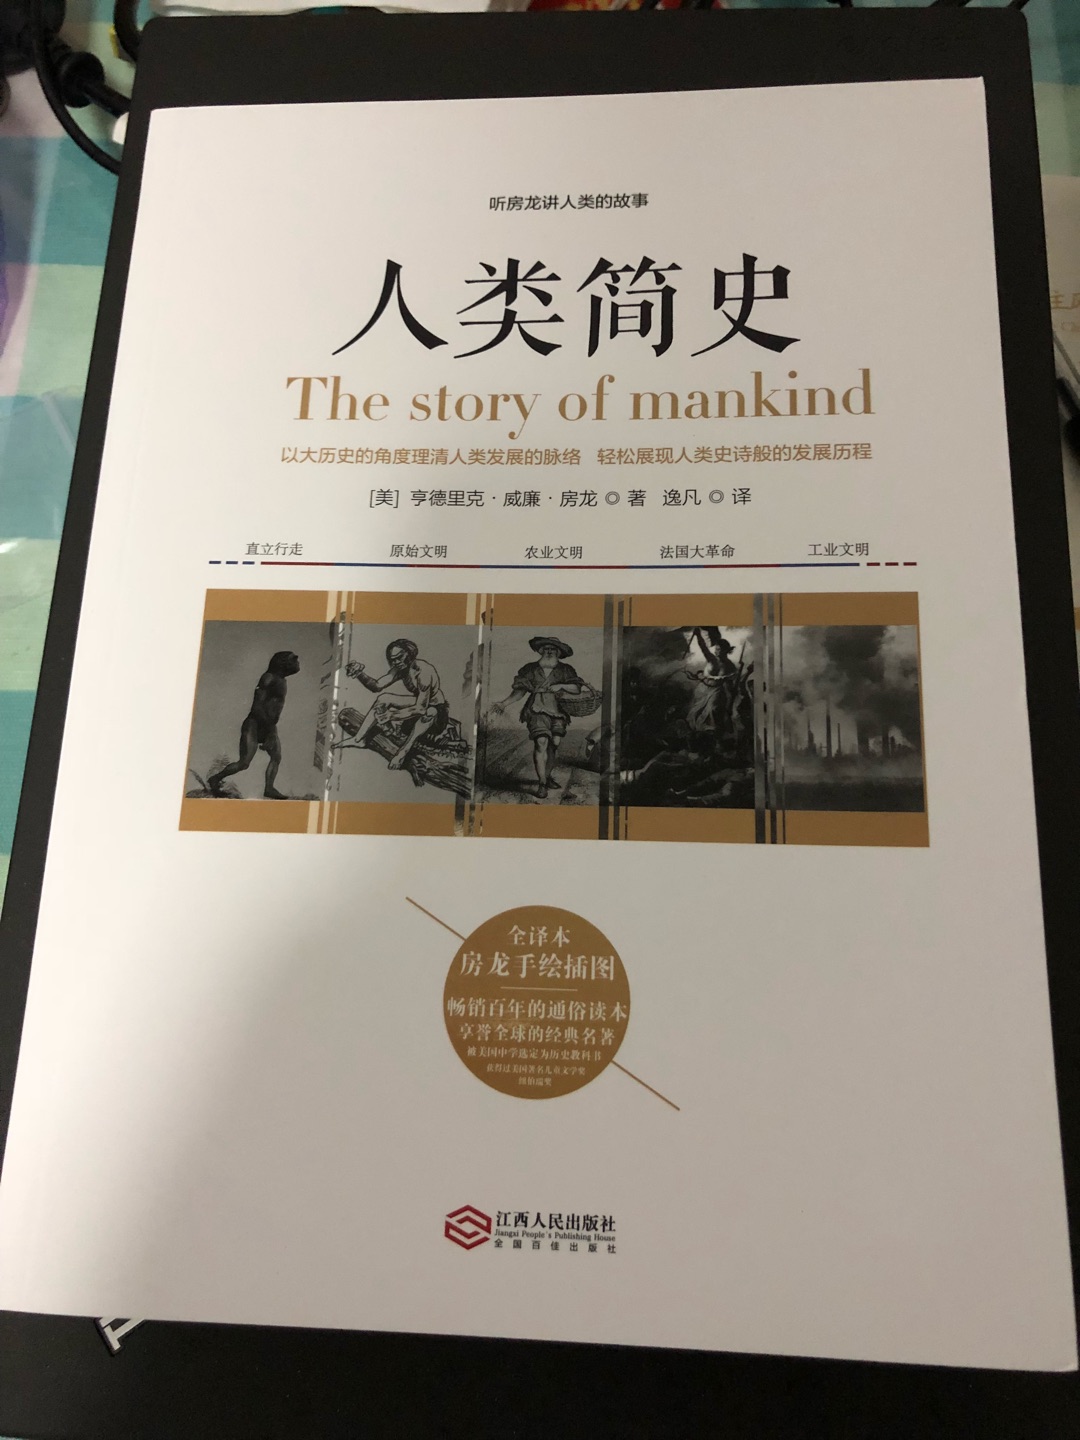 朋友推荐的一本书，林语堂大师的作品，看里面的夹页才了解原来有那么多的作品，一同策划出版的，可以当成一整套购买了